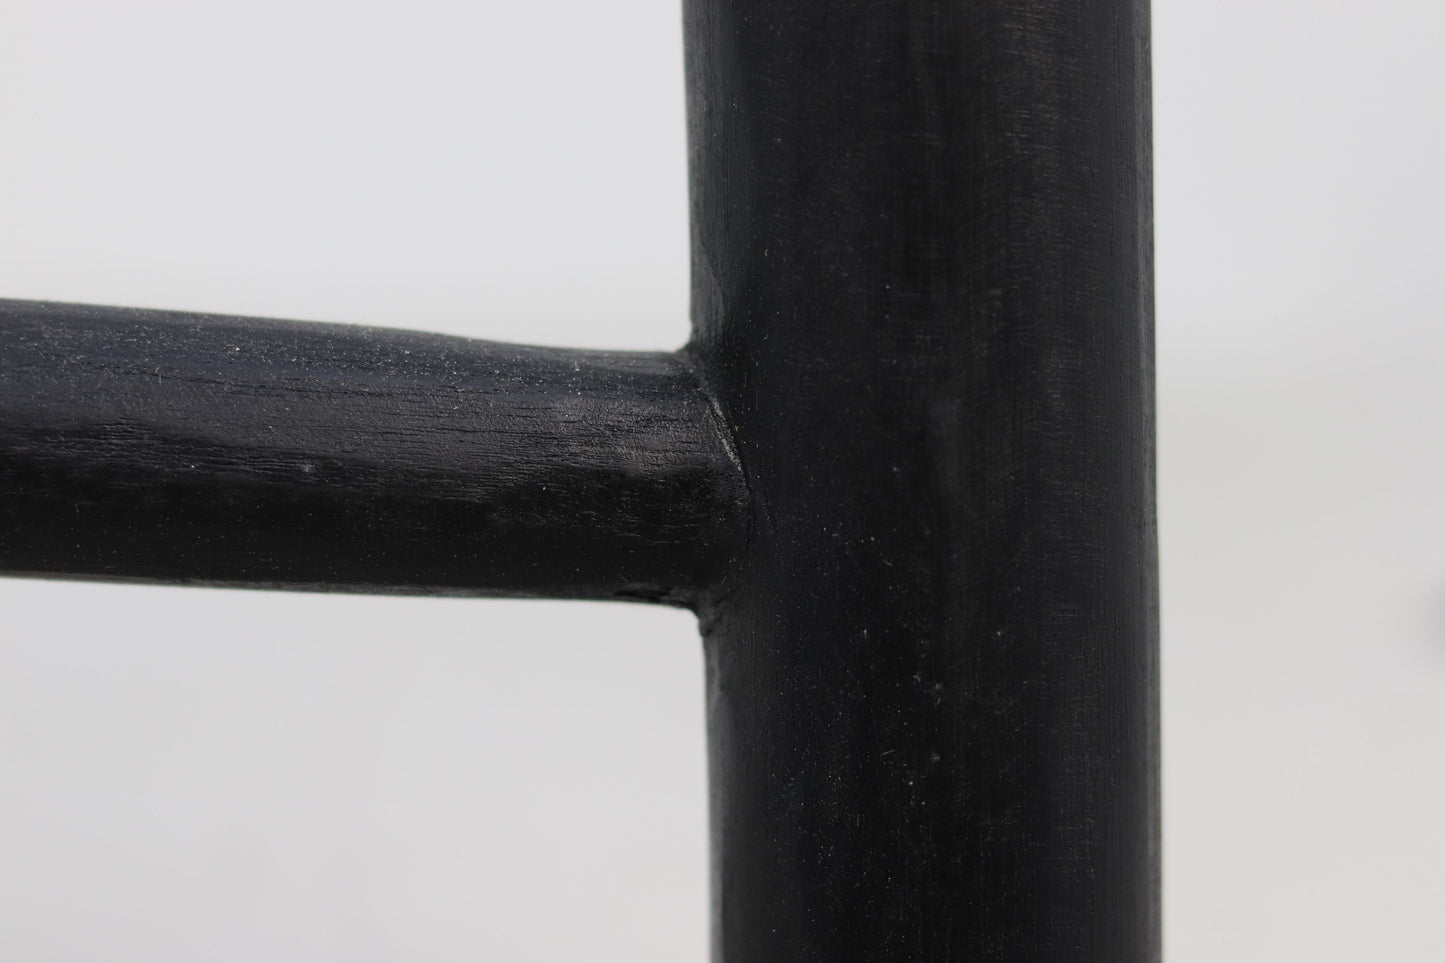 Decoratieve ladder - 150 cm - zwart